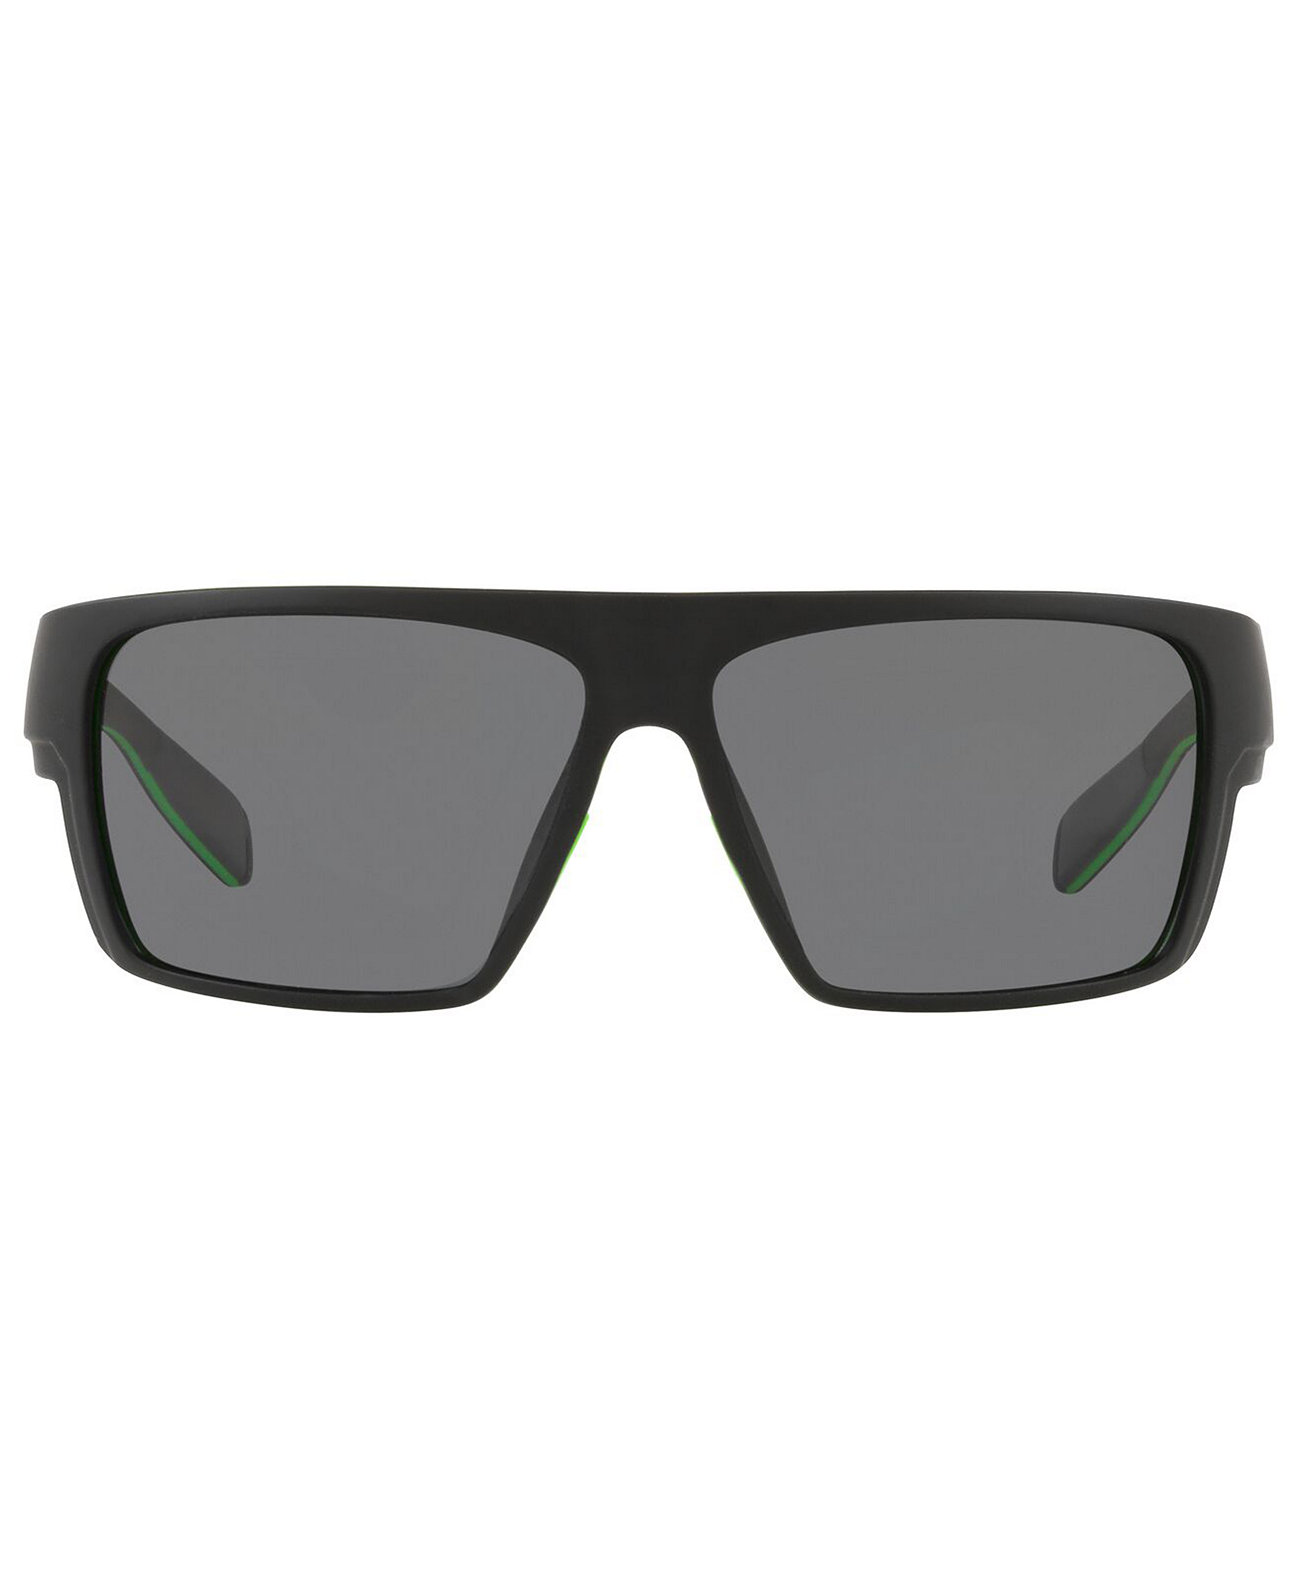 Мужские поляризованные солнцезащитные очки Native, XD9010 62 Native Eyewear